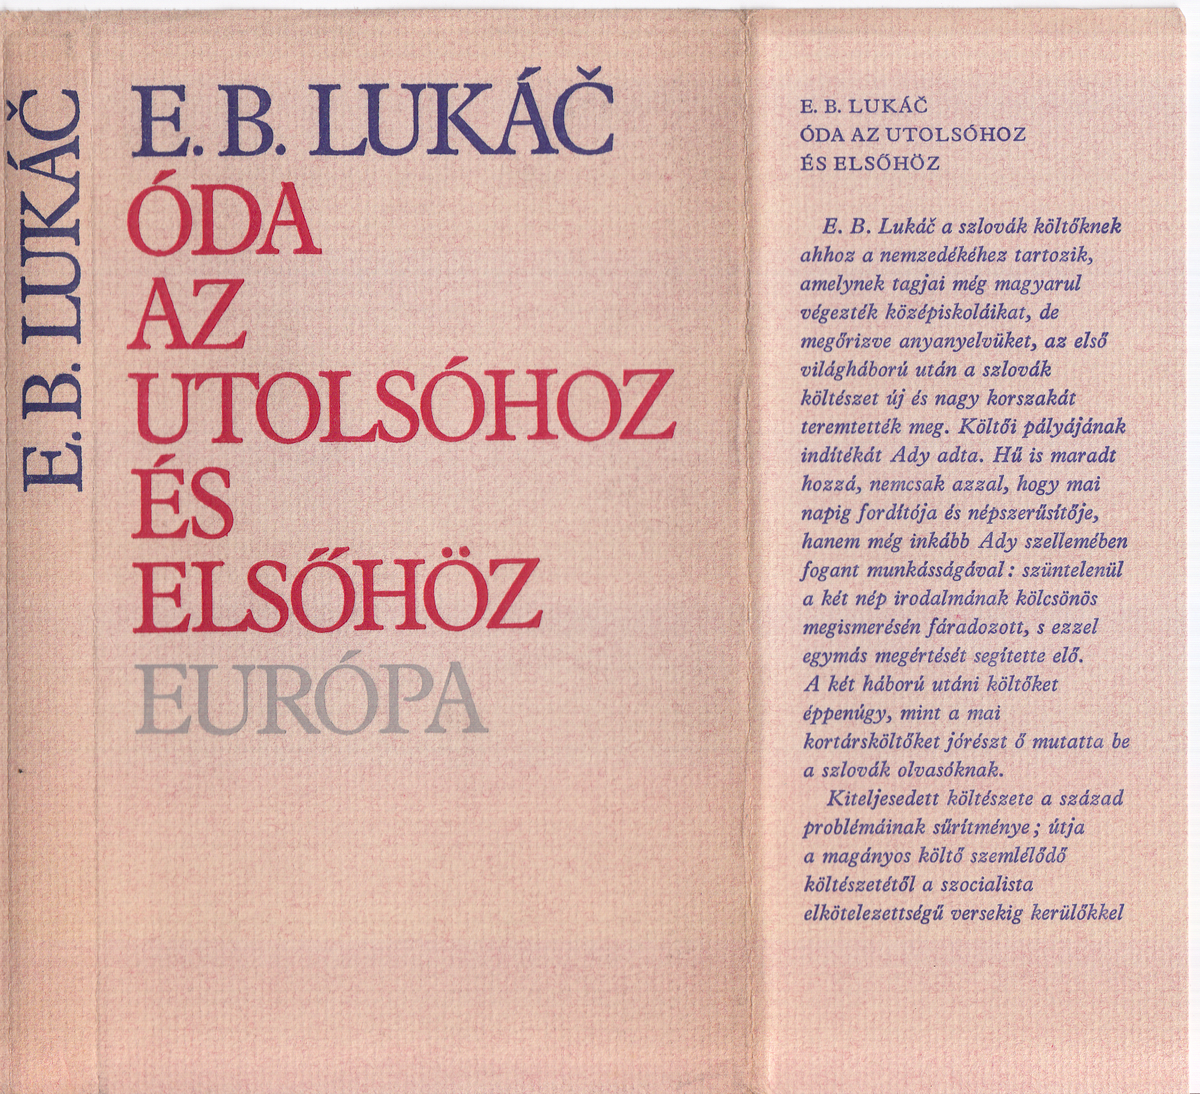 Lukáč, Emil Boleslav: Óda az utolsóhoz és elsőhöz, Emil Boleslav Lukáč versei | Library OPAC